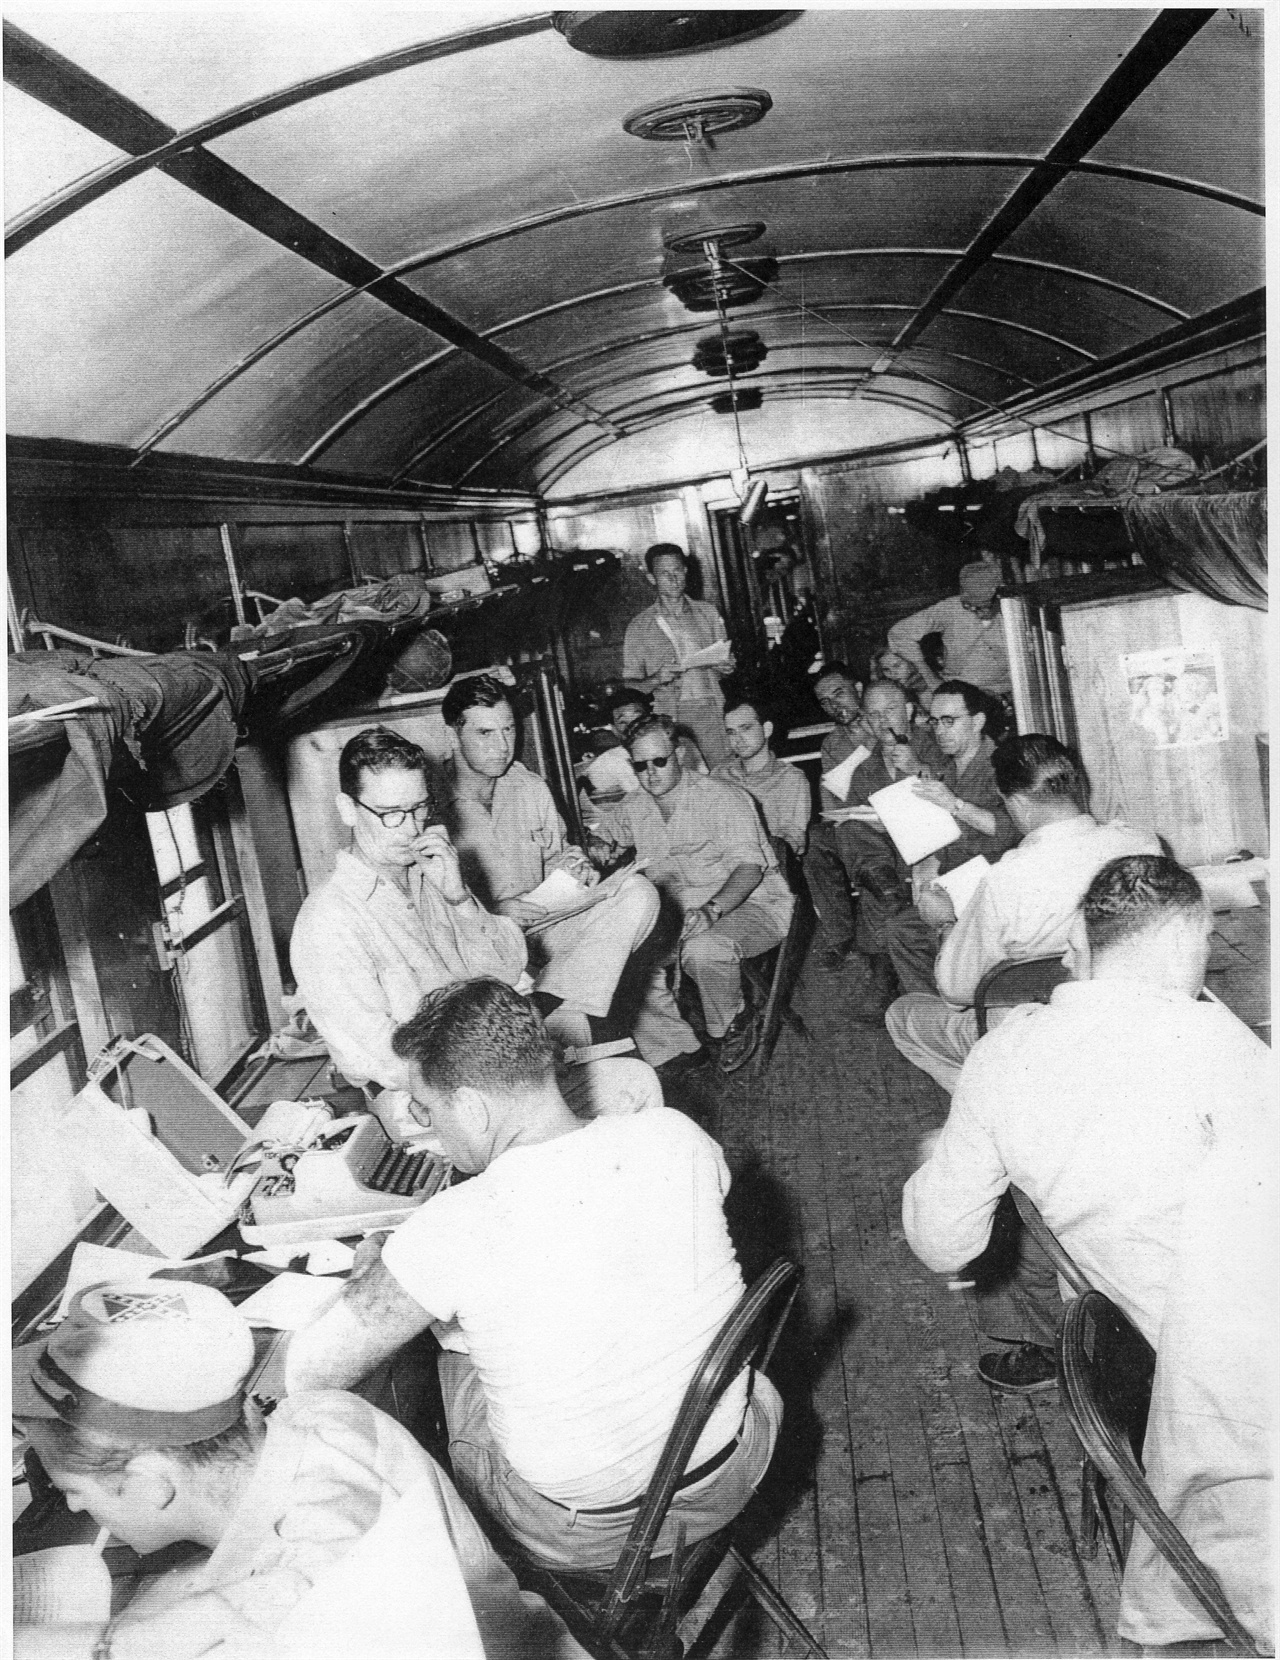 1951. 8. 12. 문산, 유엔군 측 기자들이 임시로 마련한 열차 안을 임시 취재실로 쓰고 있다.